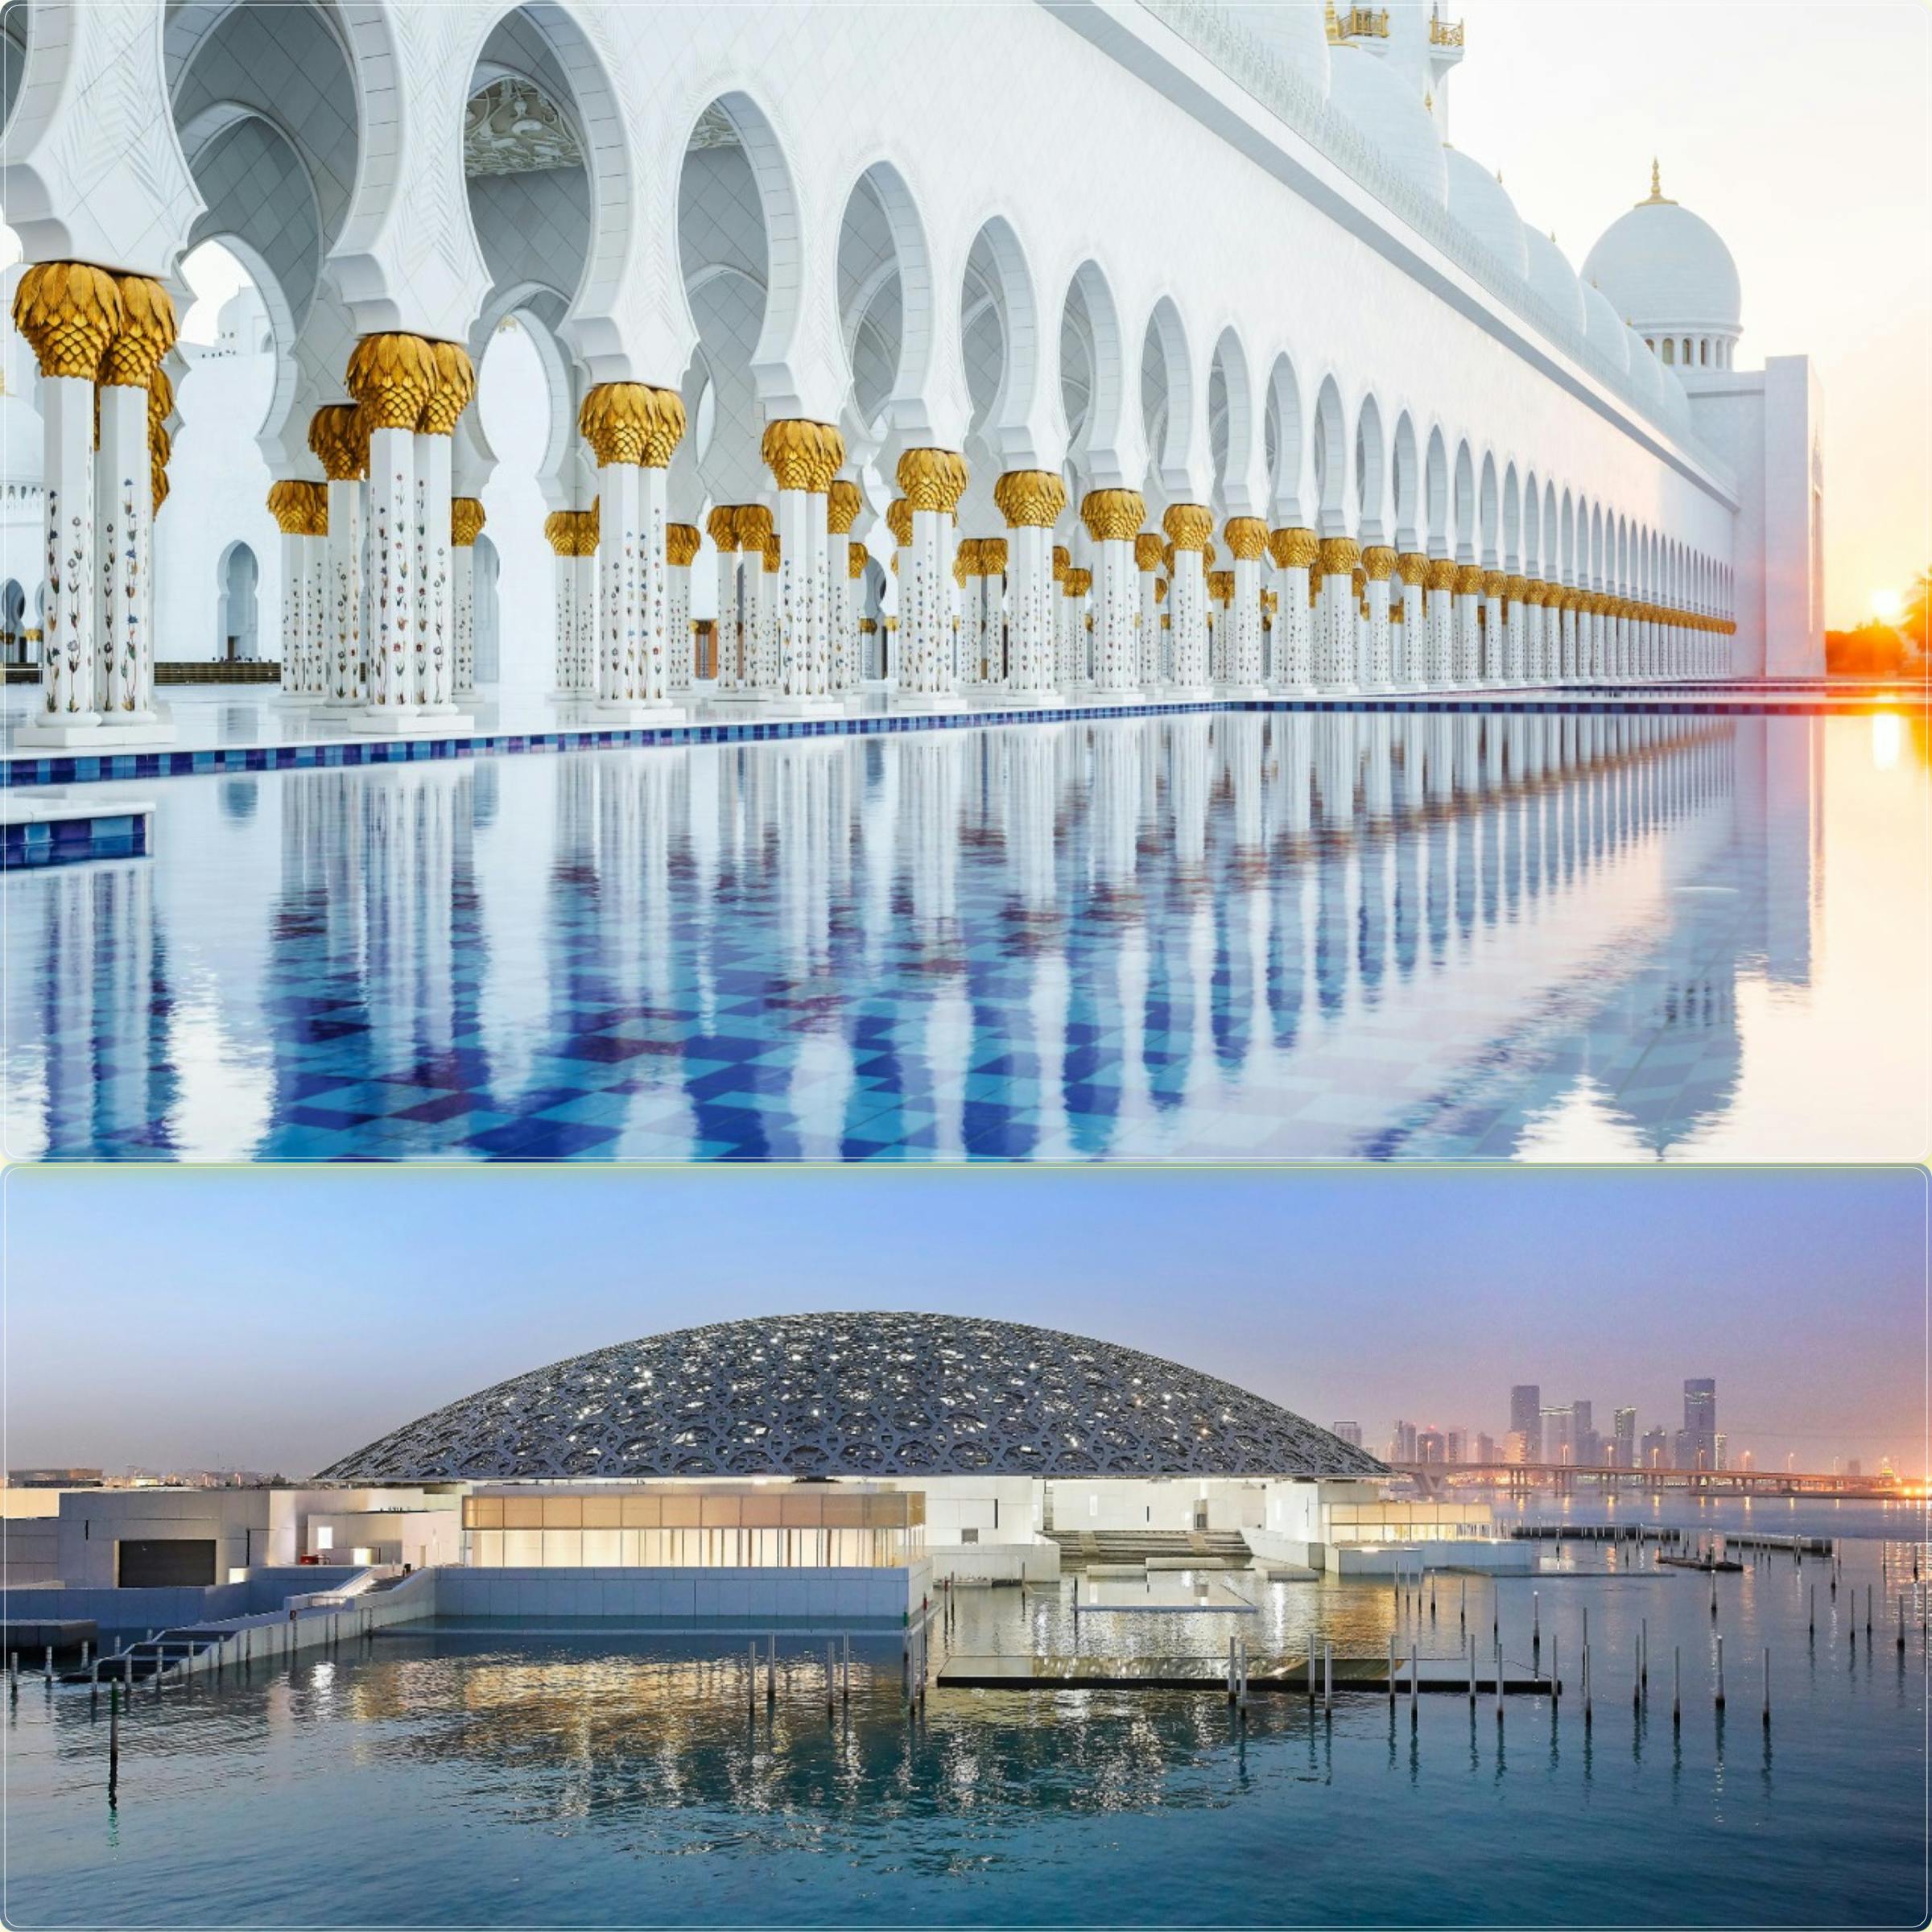 Tagesausflug zum Abu Dhabi Louvre Museum und zur Scheich-Zayid-Moschee ab Dubai